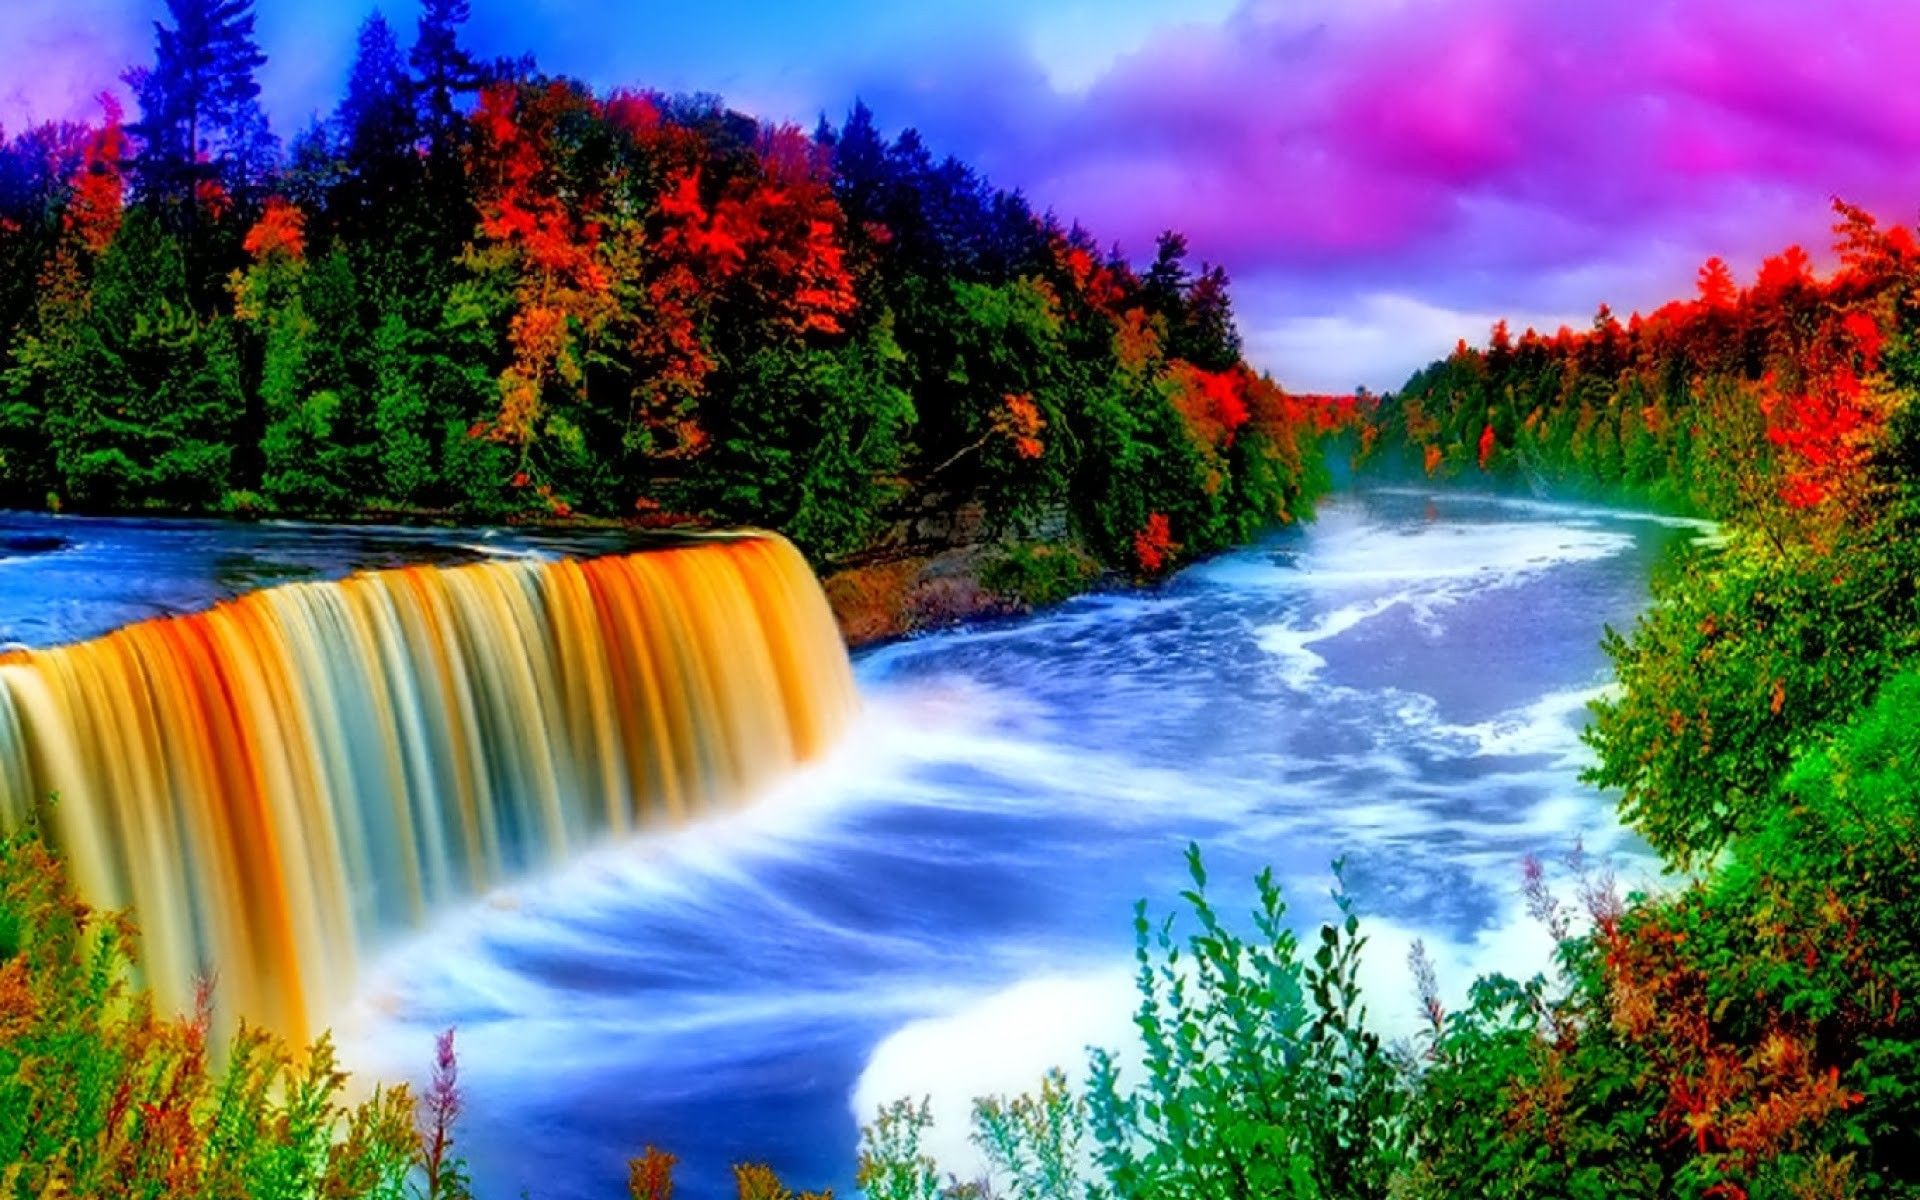 ♥﻿ღೋƸ̵̡Ӝ̵̨̄Ʒღೋ♥. Beautiful nature scenes, Rainbow waterfall